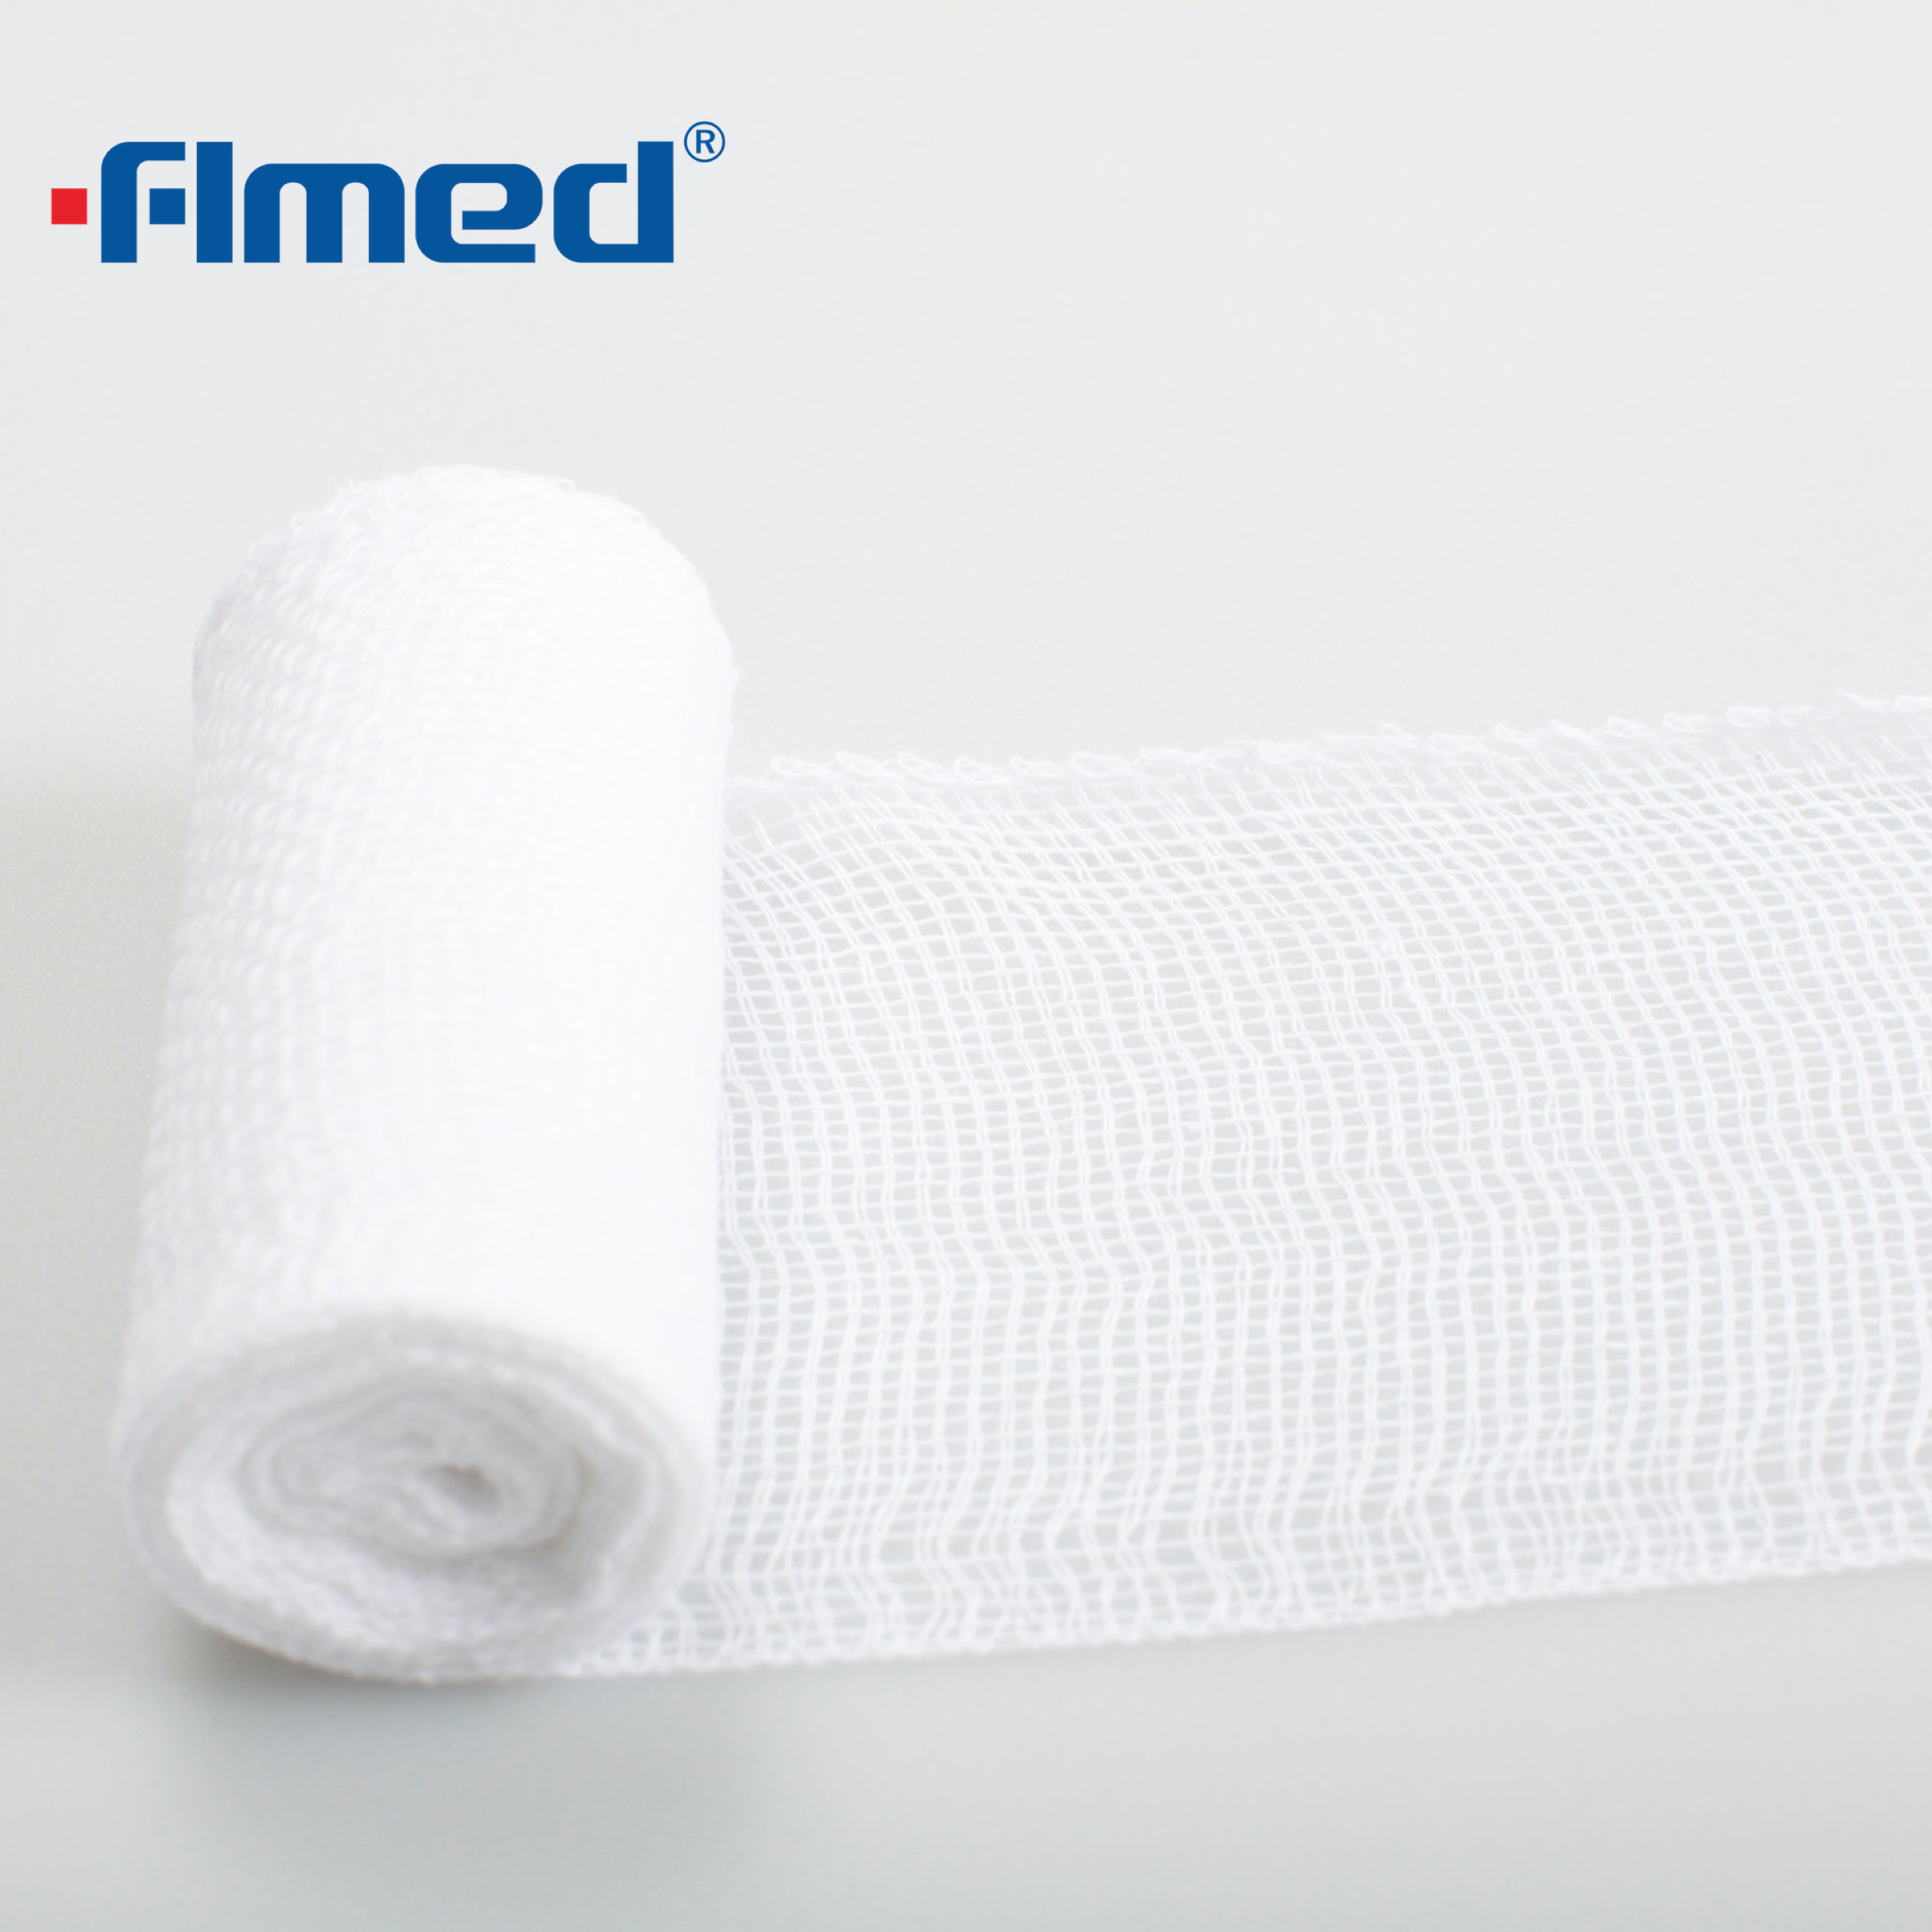 Używany do ubierania się i mocowania elastycznego miękkiego profesjonalnego bandażu PBT